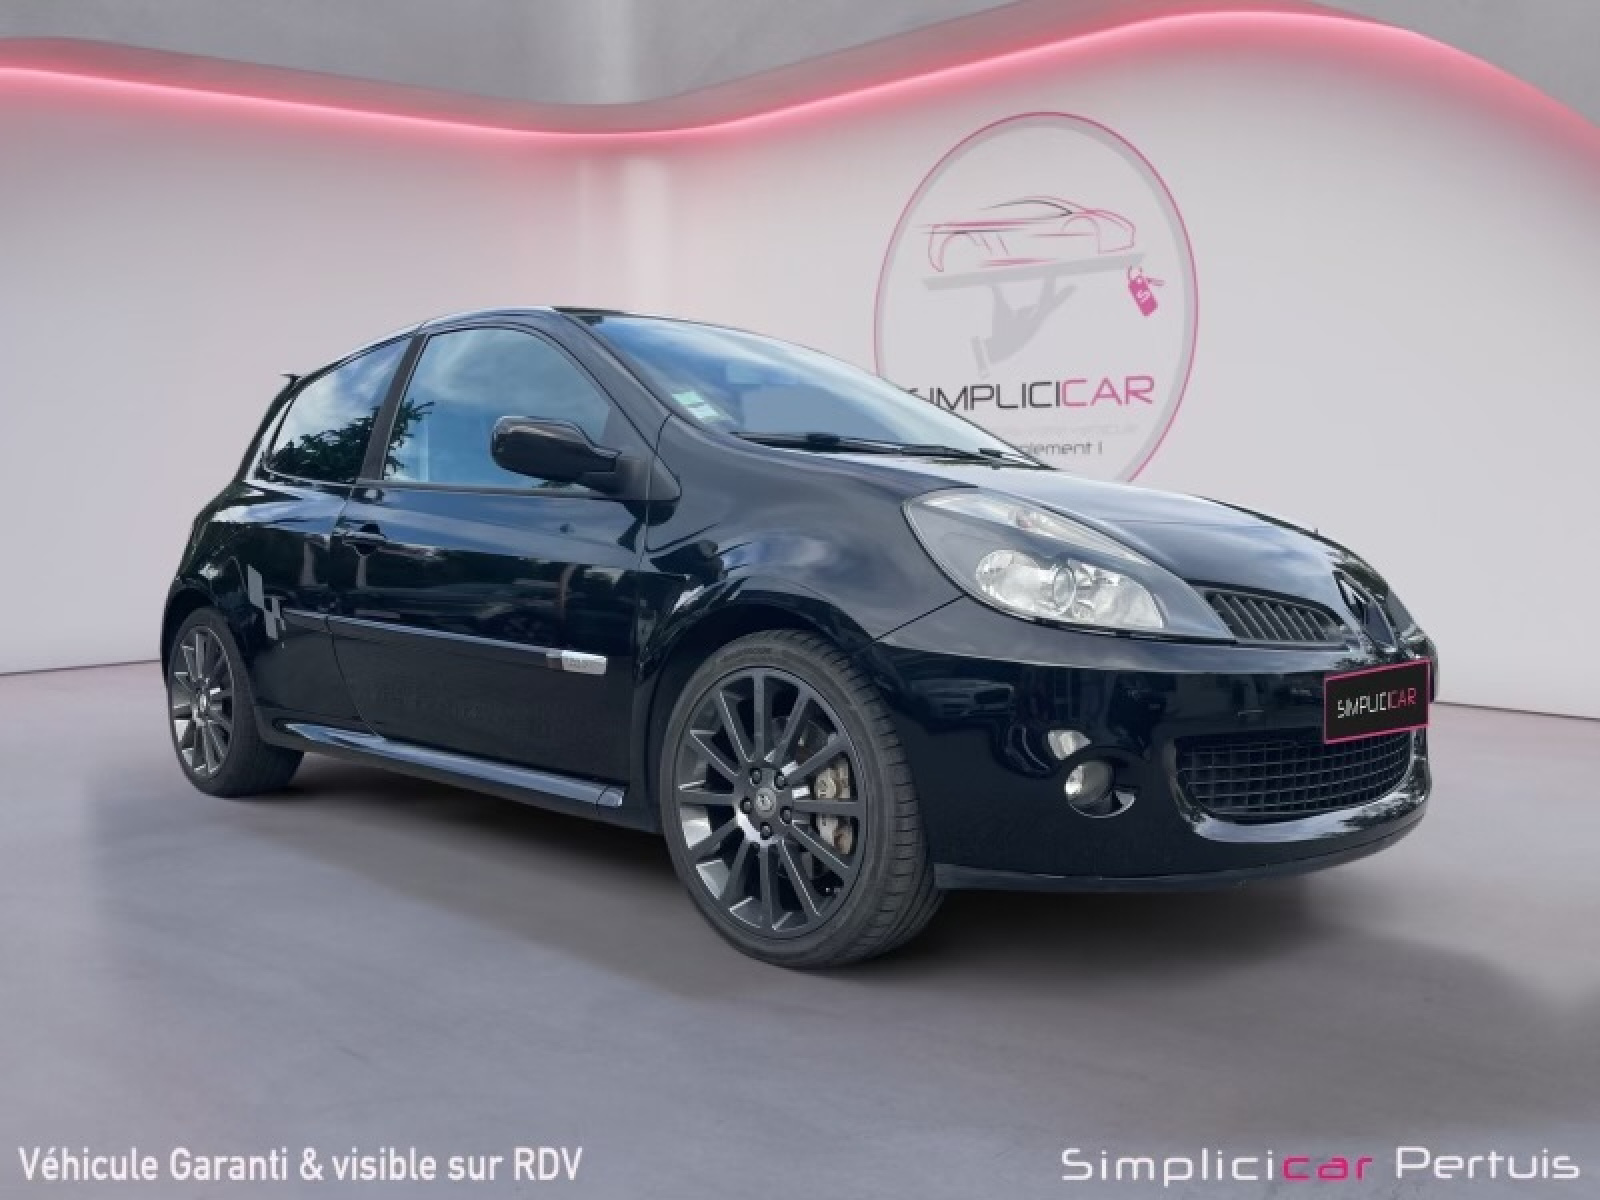 Renault Clio III sport occasion : annonces achat, vente de voitures